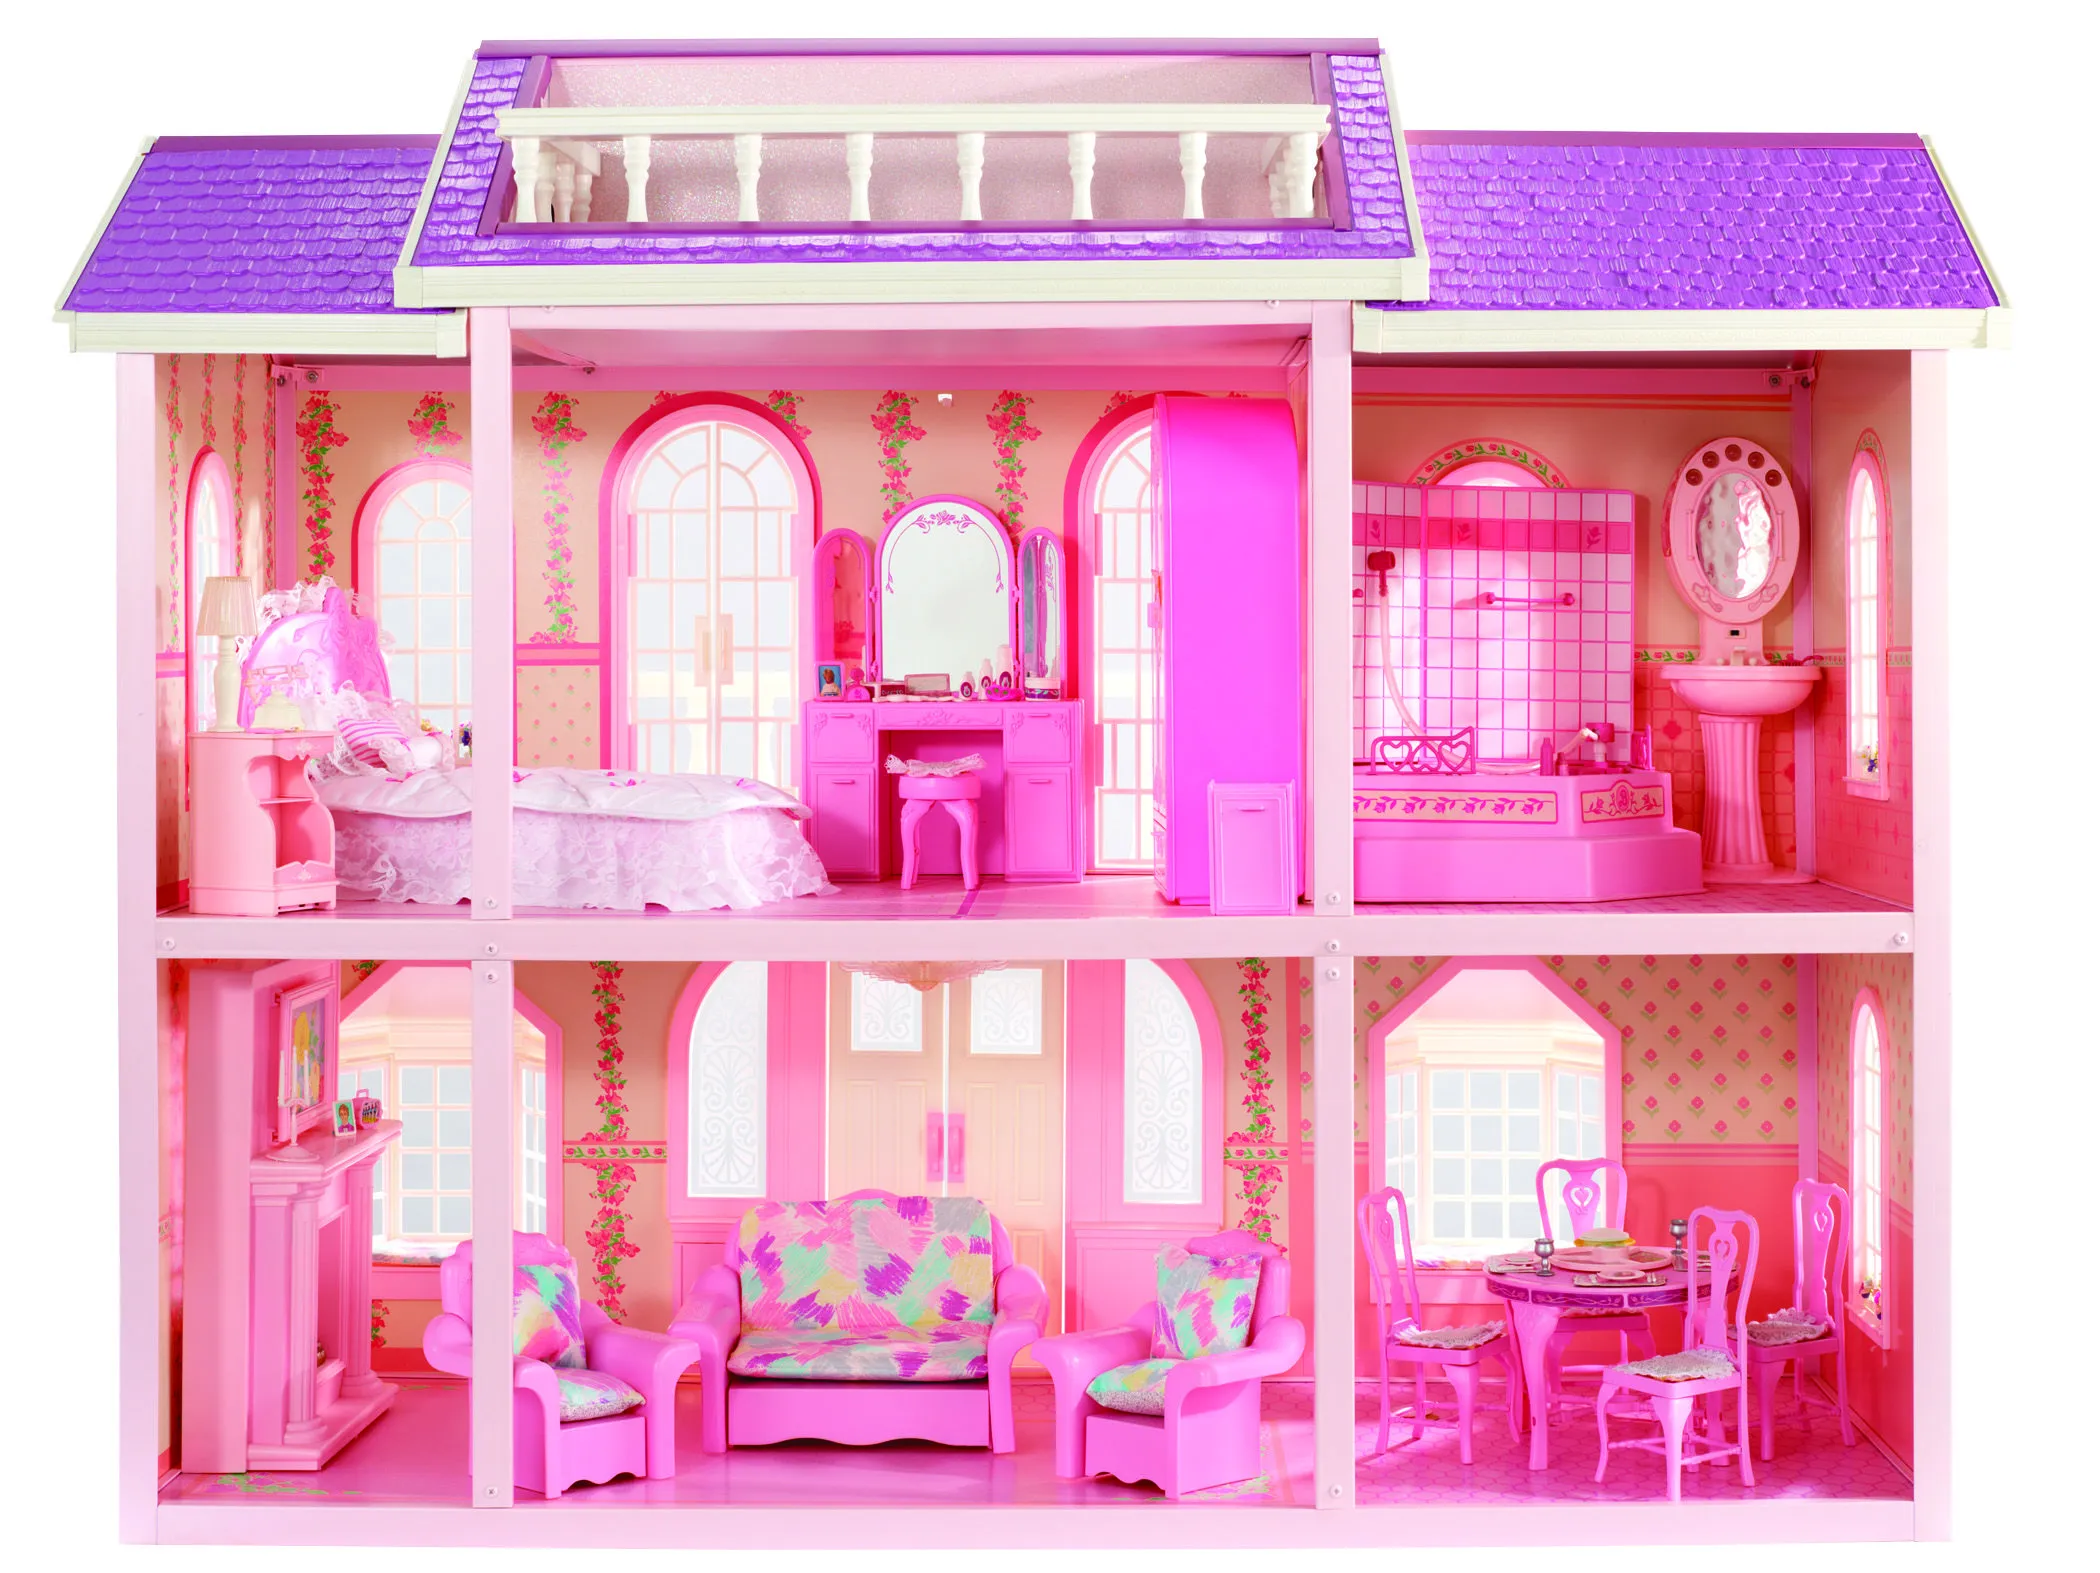 Barbie se muda de casa | Una vitrina llena de tesoros (Barbie blog)